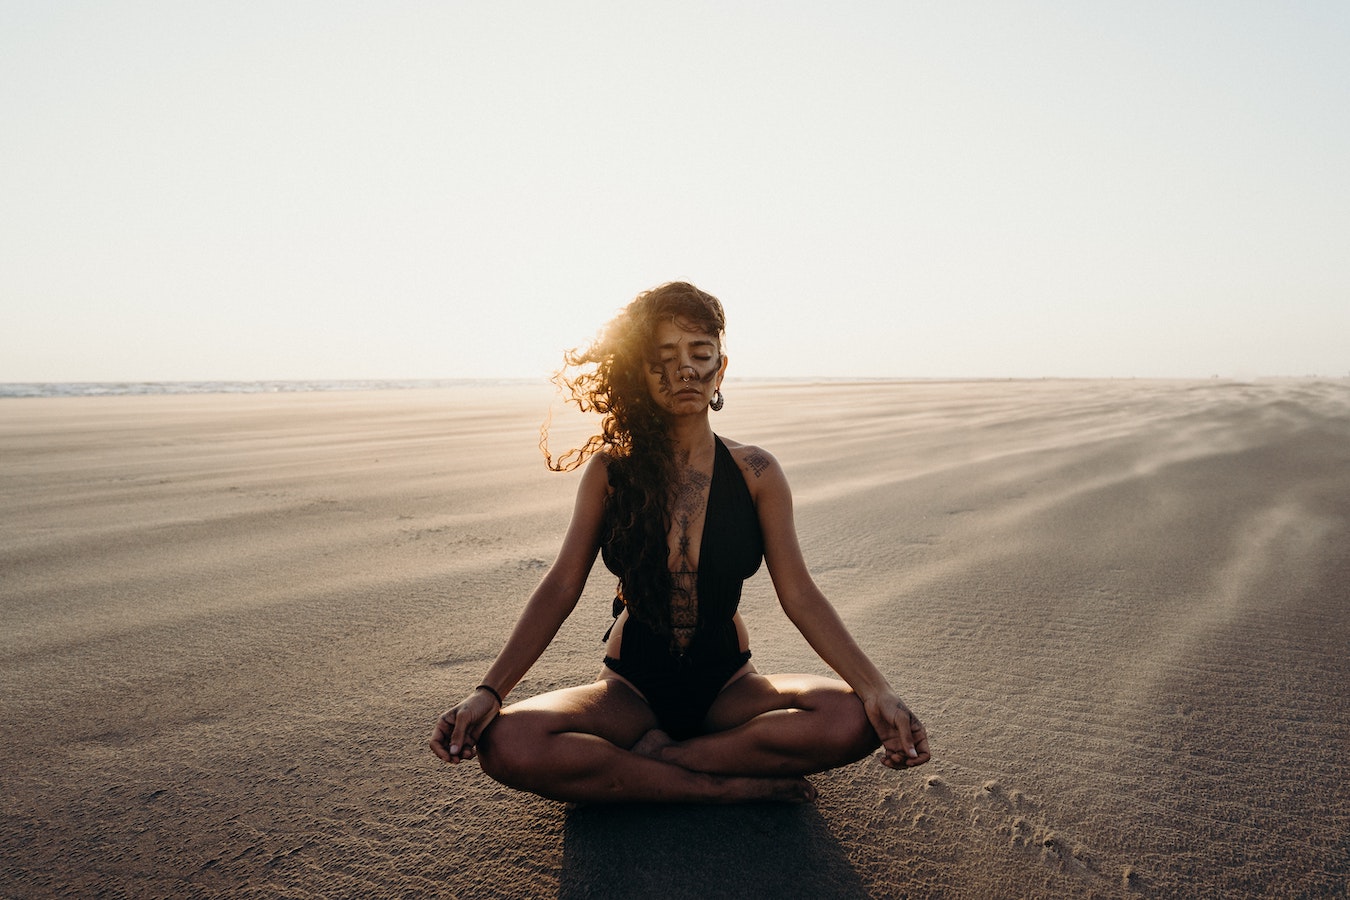 junge Frau im schwarzen Badeanzug sitzt alleine in der Wüste auf dem Sand und verbindet sich mit ihrem höheren selbst durch Meditation